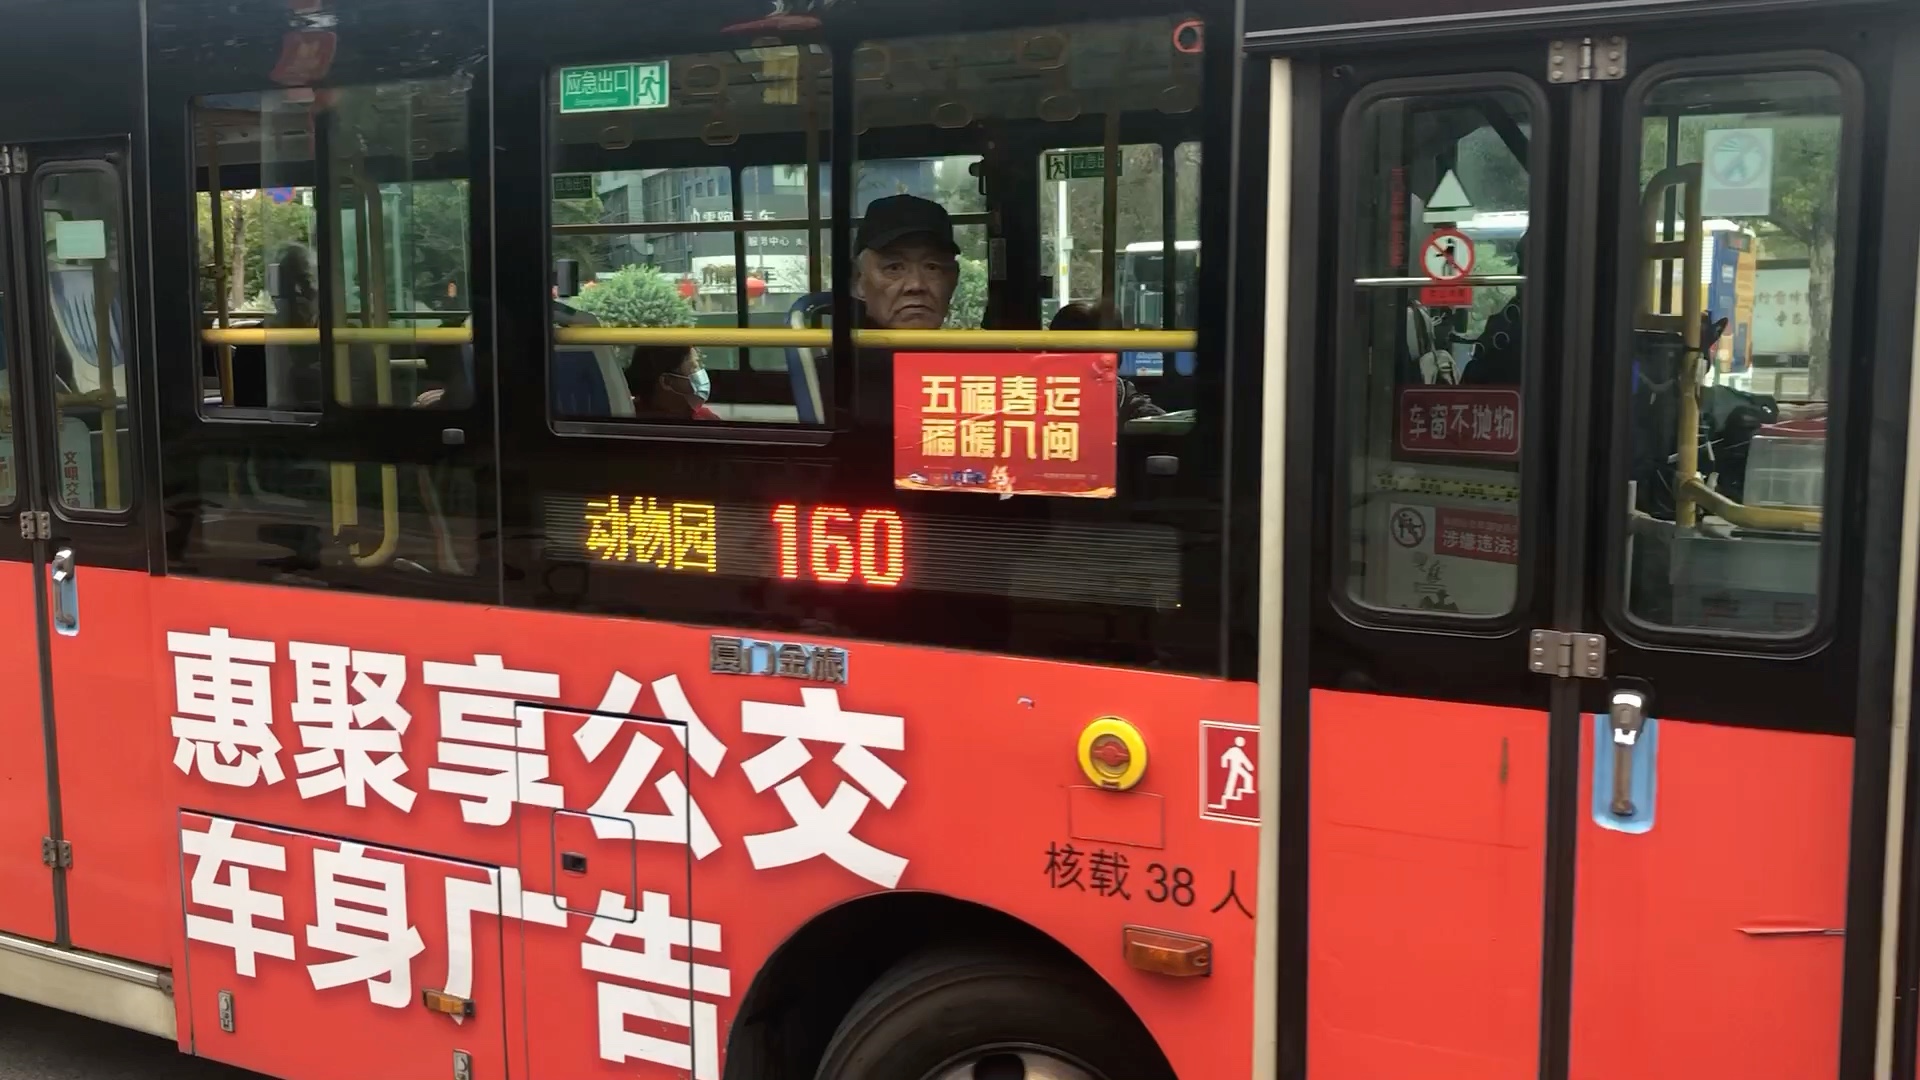 福州公交K3图片